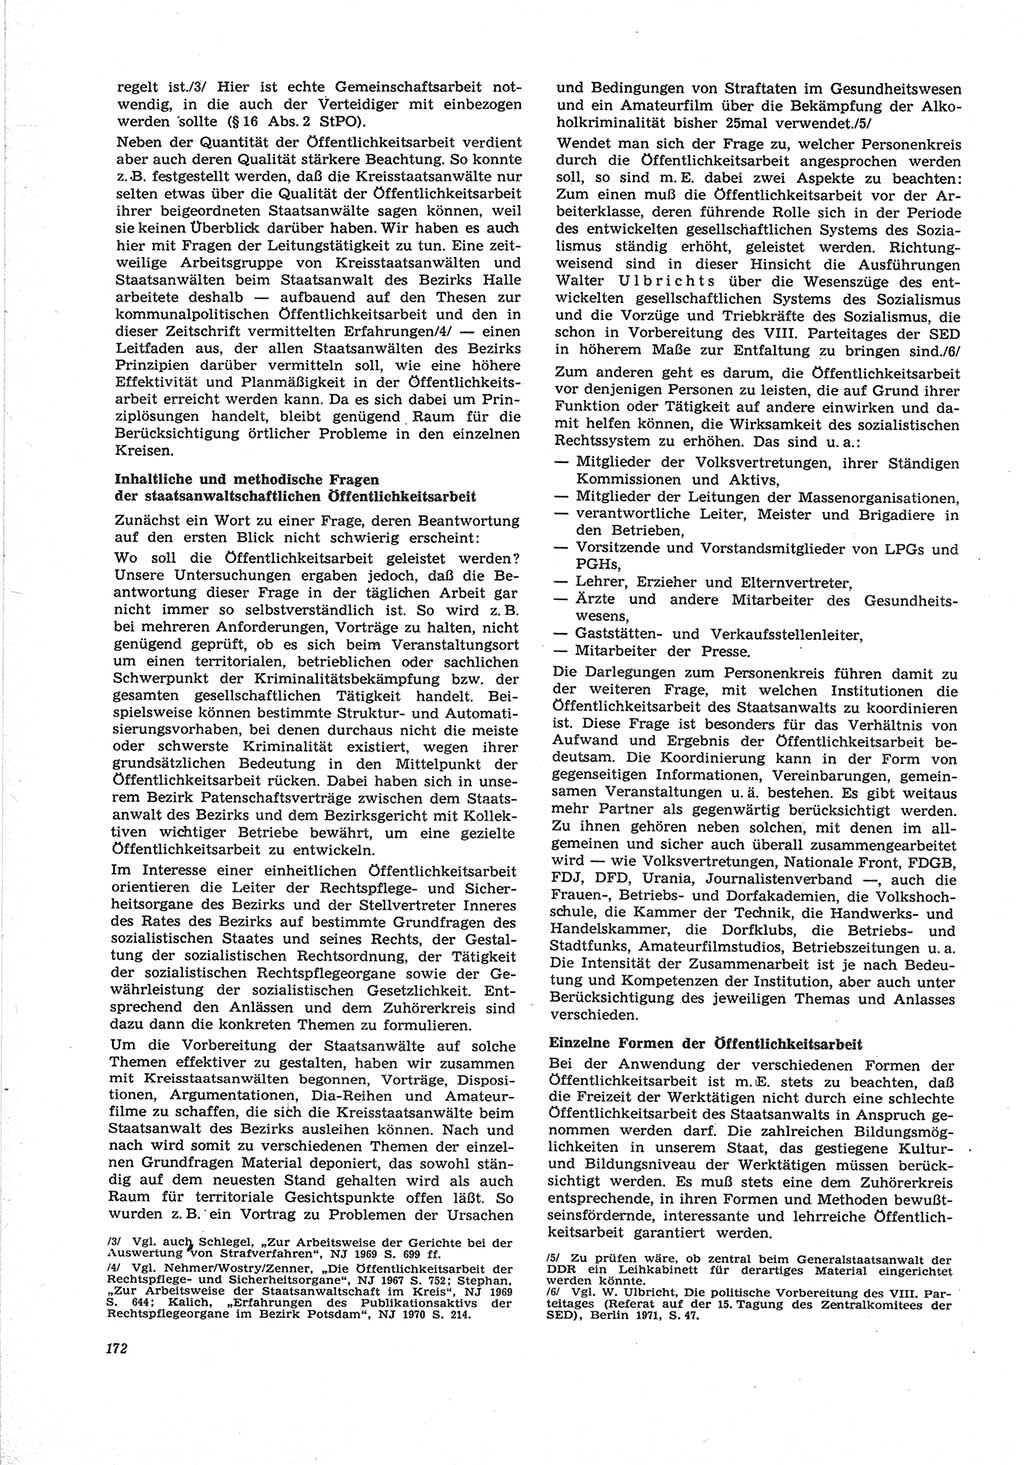 Neue Justiz (NJ), Zeitschrift für Recht und Rechtswissenschaft [Deutsche Demokratische Republik (DDR)], 25. Jahrgang 1971, Seite 172 (NJ DDR 1971, S. 172)